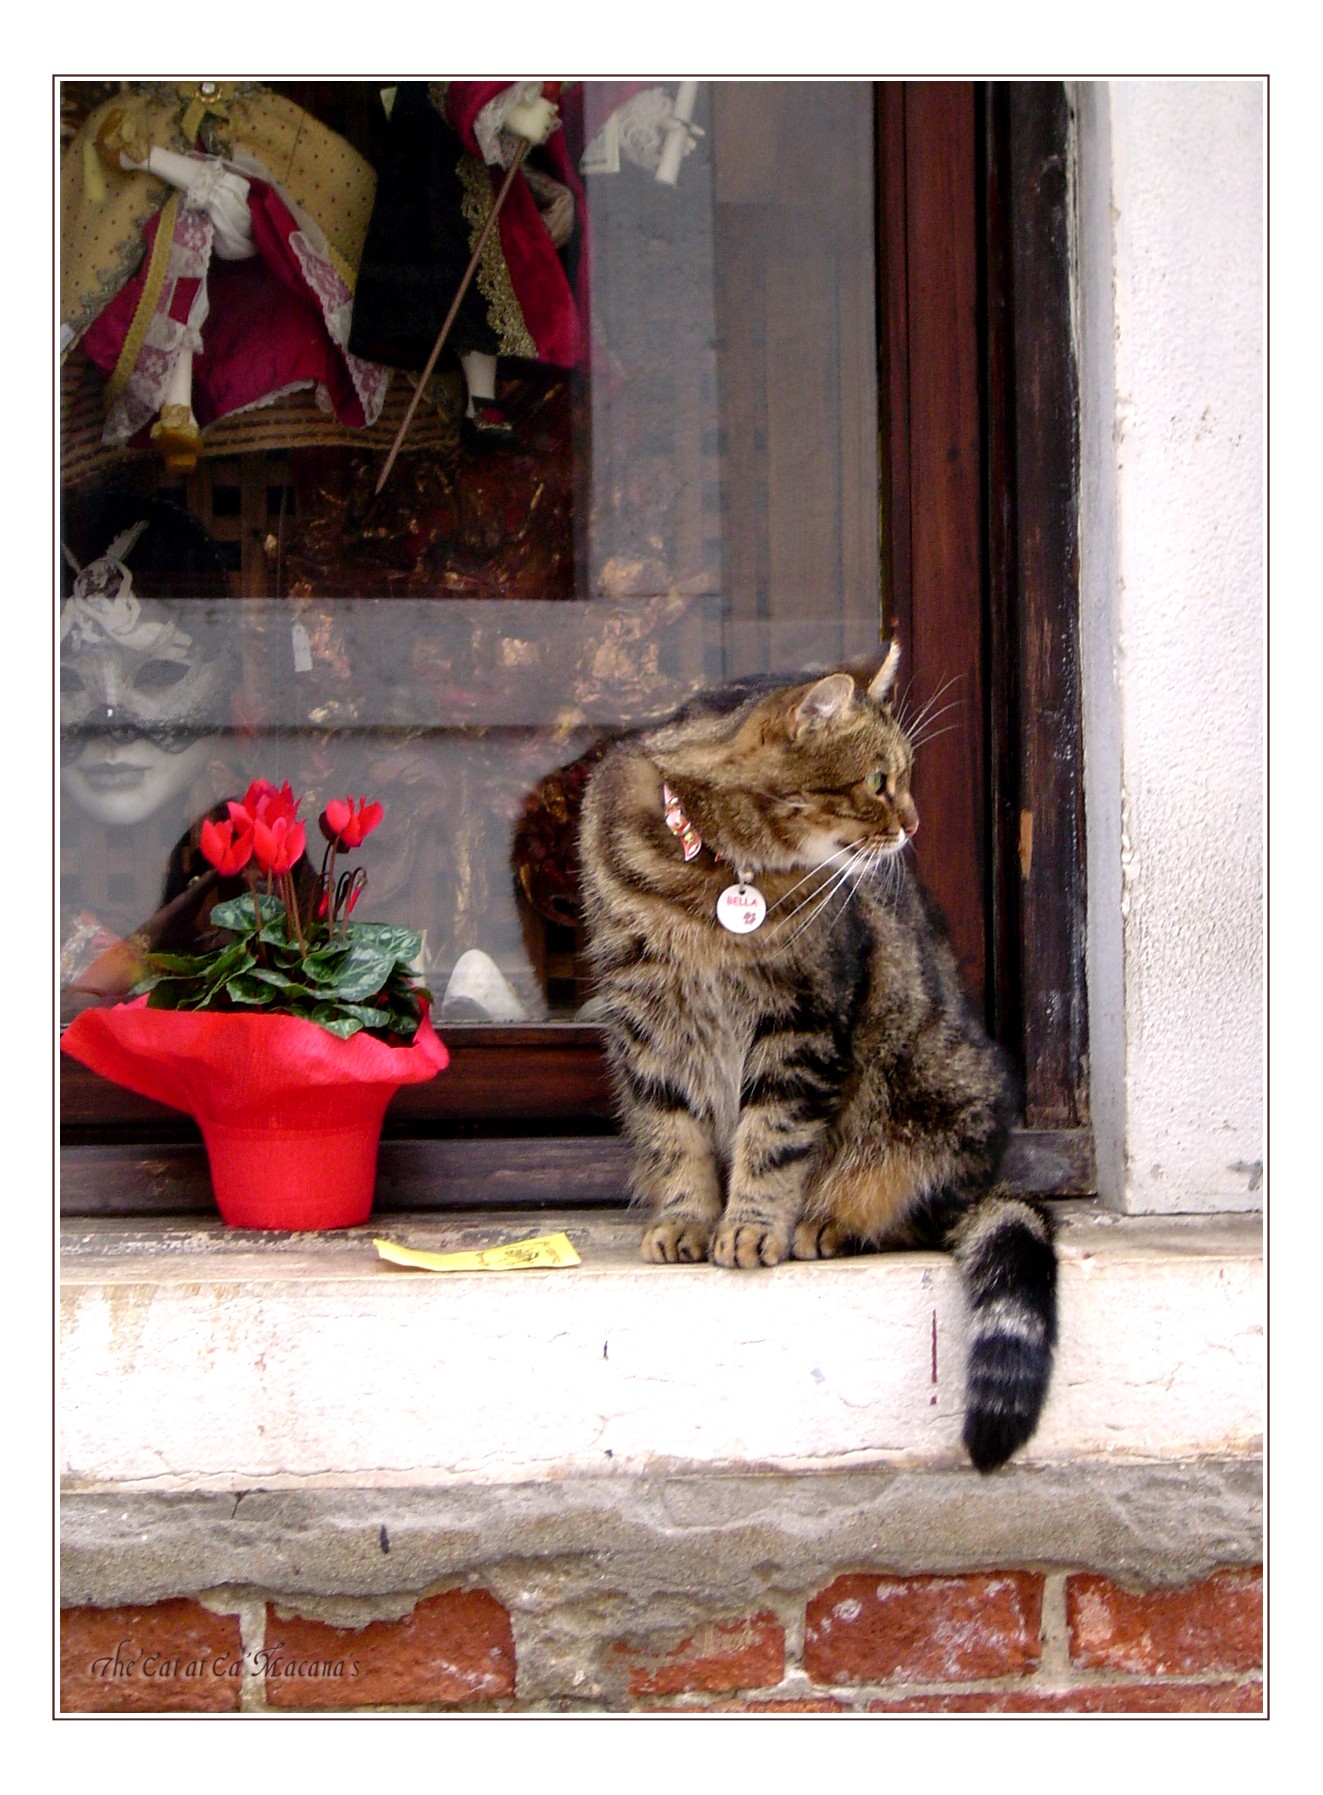 Venice - Cat at Ca' Macana's